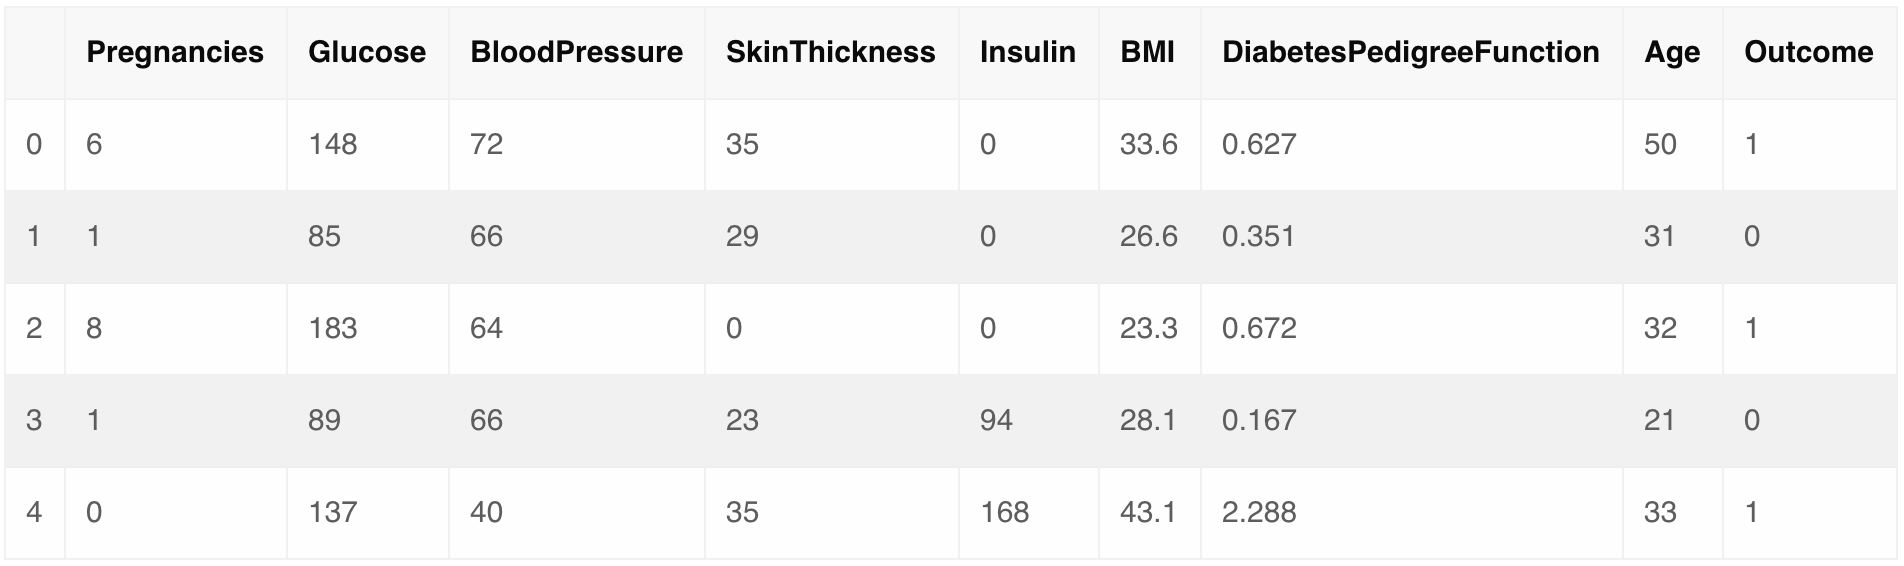 Image showing snapsht of Pima Diabetes Dataset